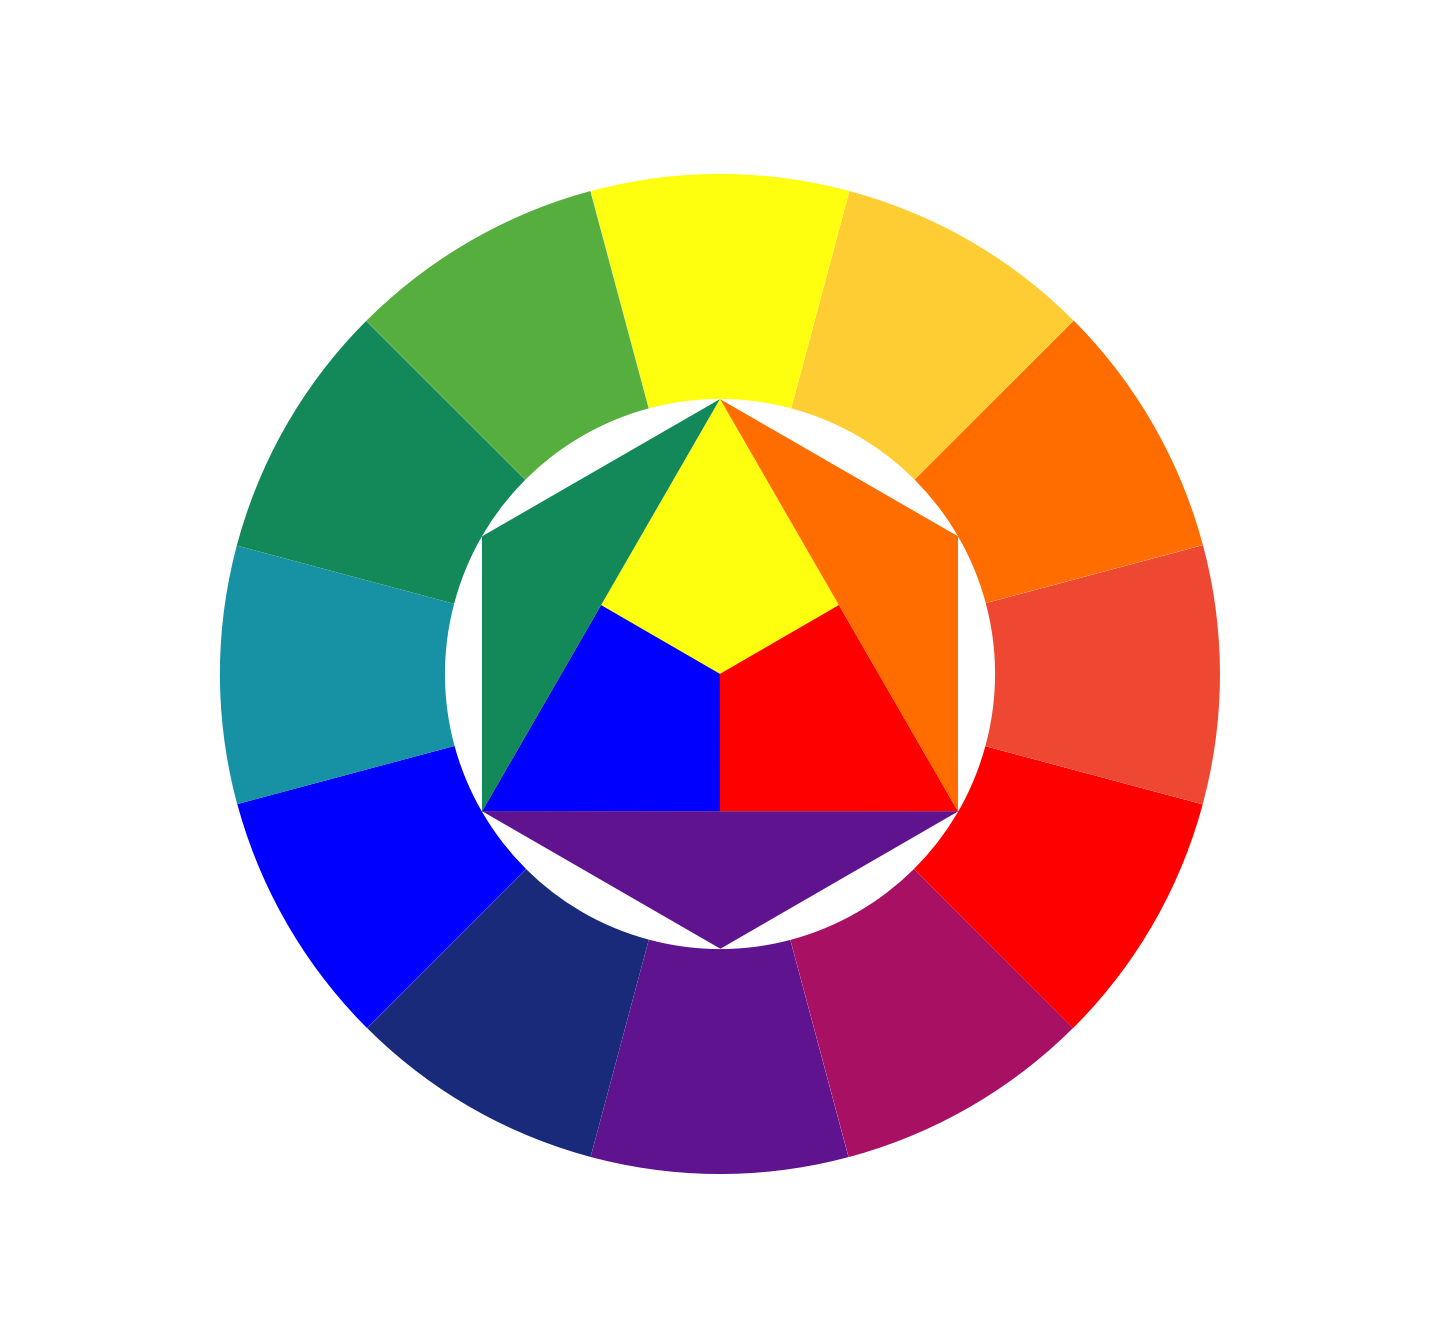 Цветовой баланс картины. Круг Иоханнеса Иттена. Цветовой спектр Иттена. Иоганнес Иттен цветовой круг. Цветовой круг Иттена контрасты.